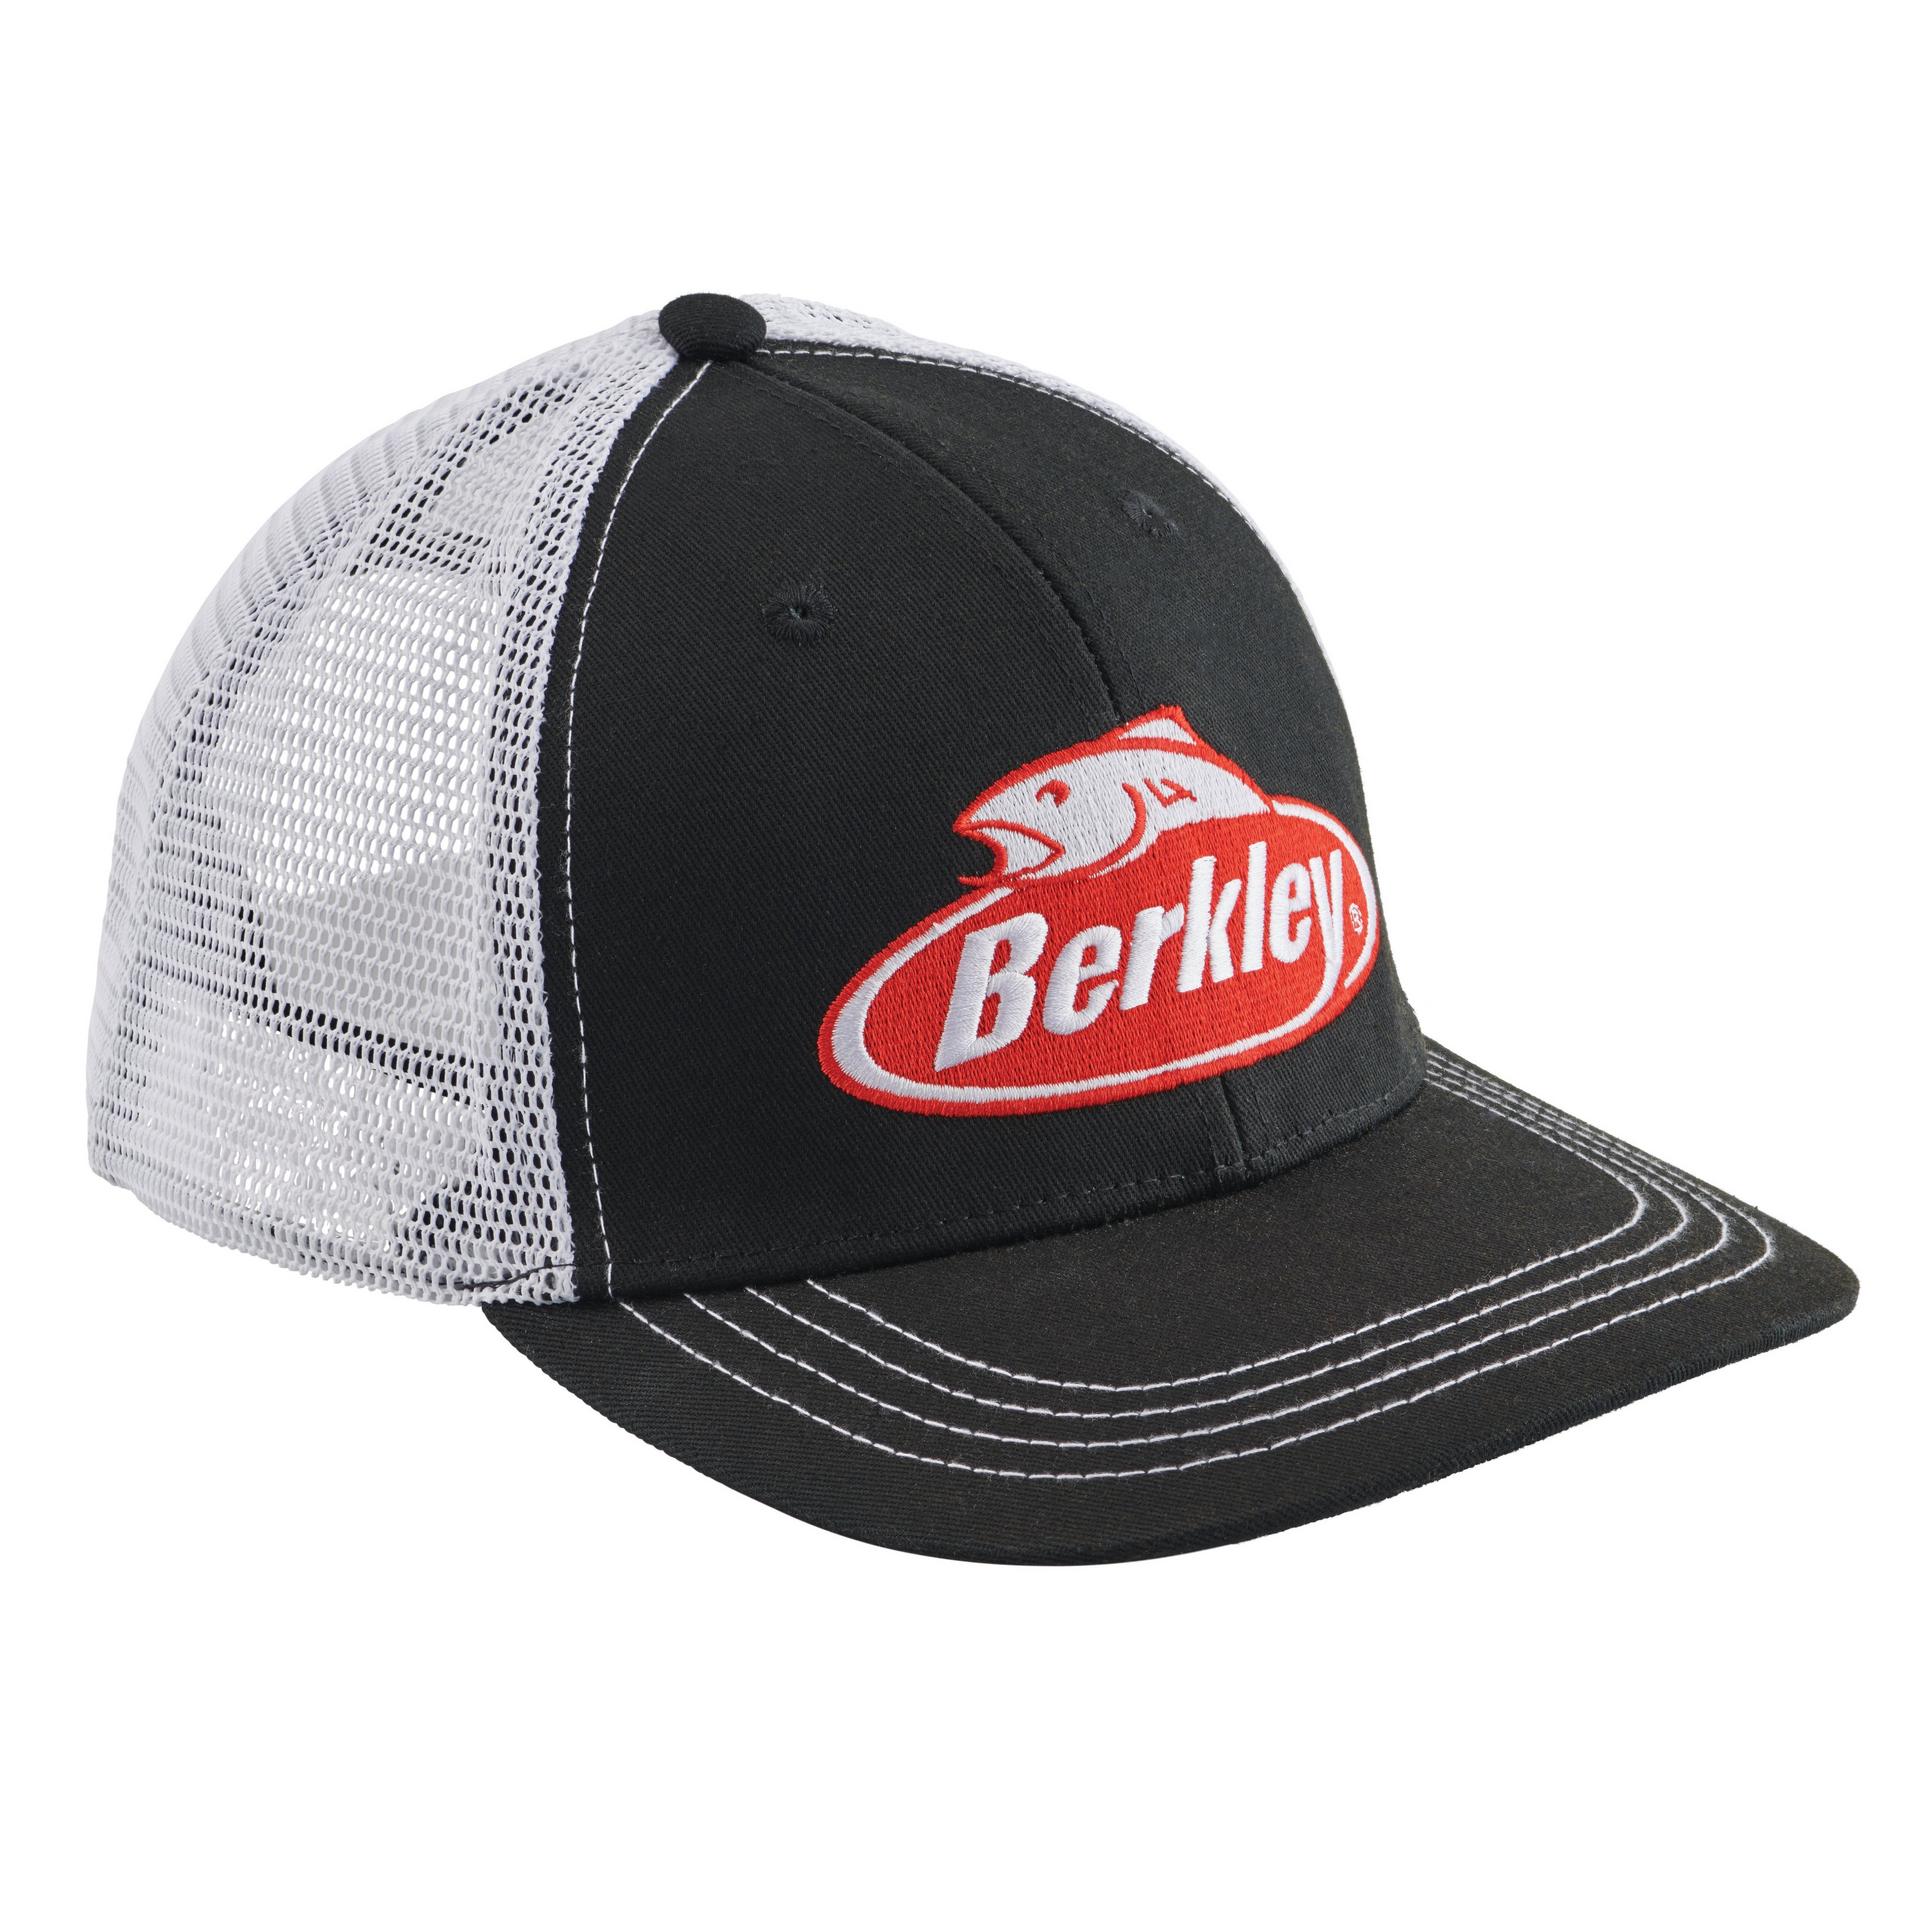 Berkley Mesh Hat BlackWhite 2020 alt2 | Berkley Fishing